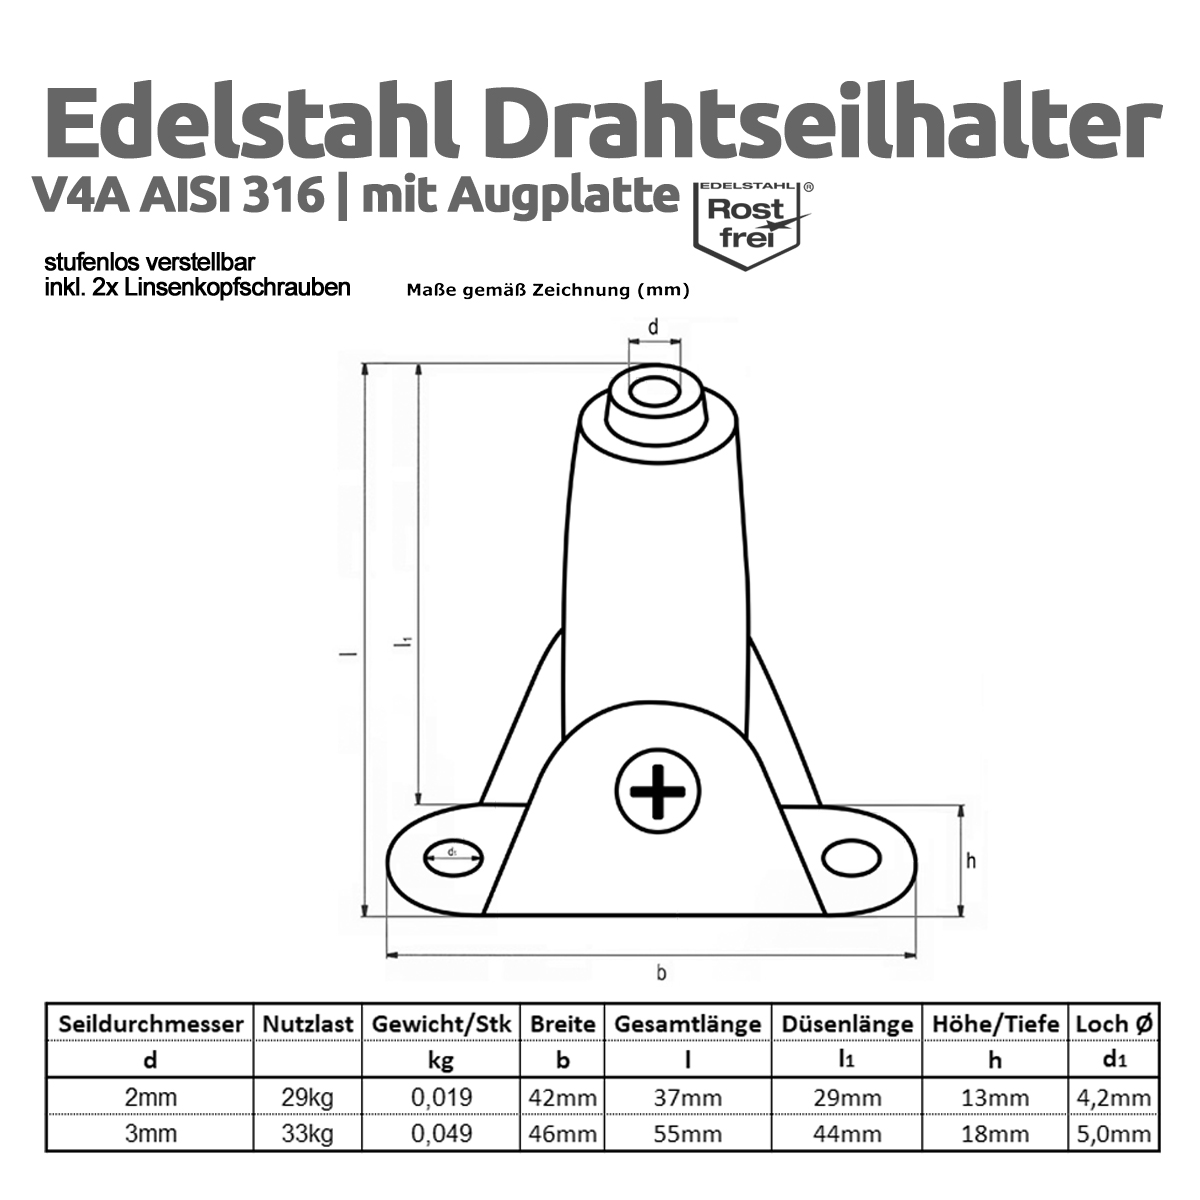 Edelstahl_Drahtseilhalter_Augplatte_Grafik